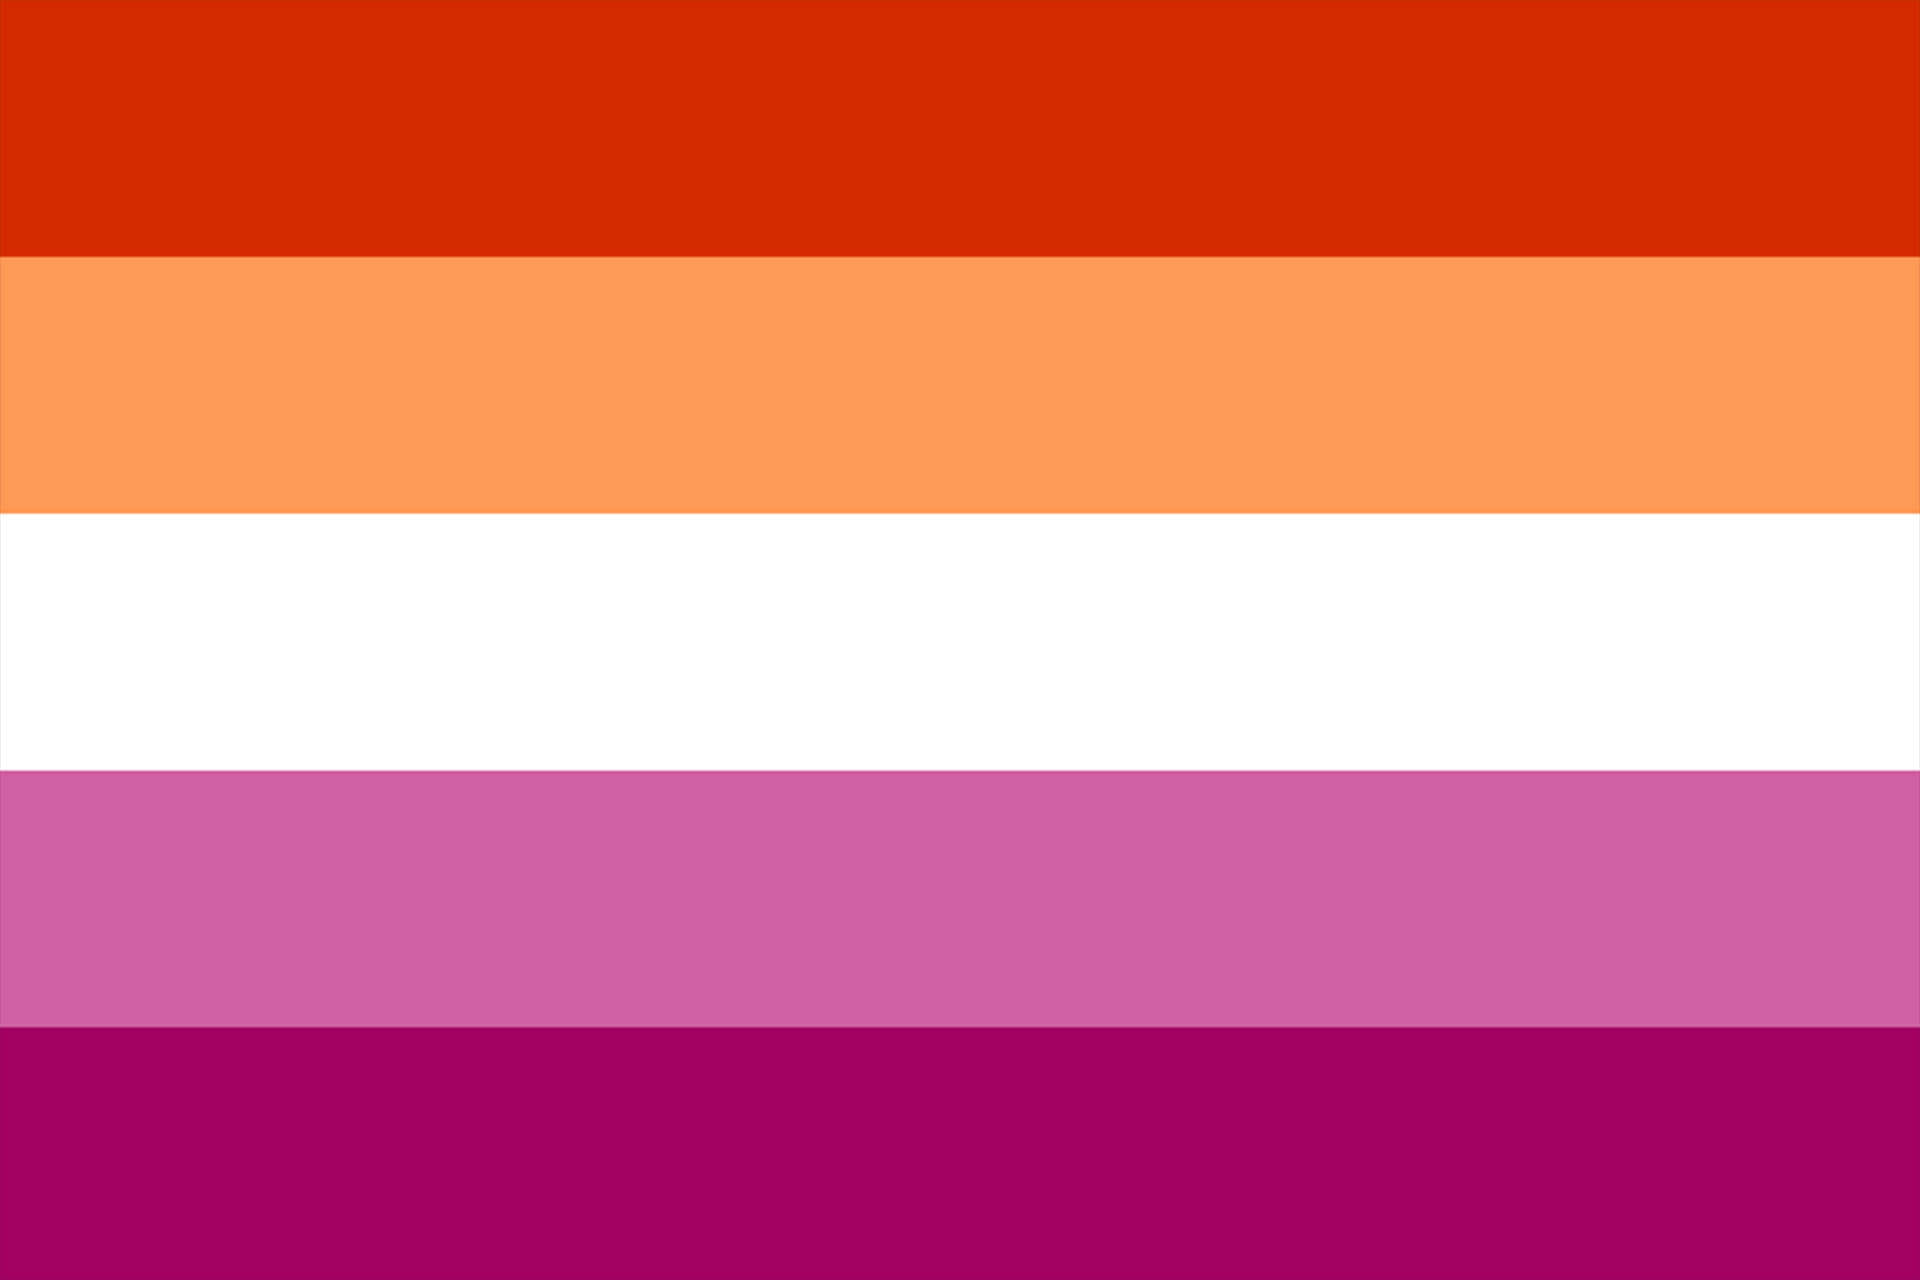 Eineregenbogenflagge Mit Den Farben Weiß, Rosa Und Orange.